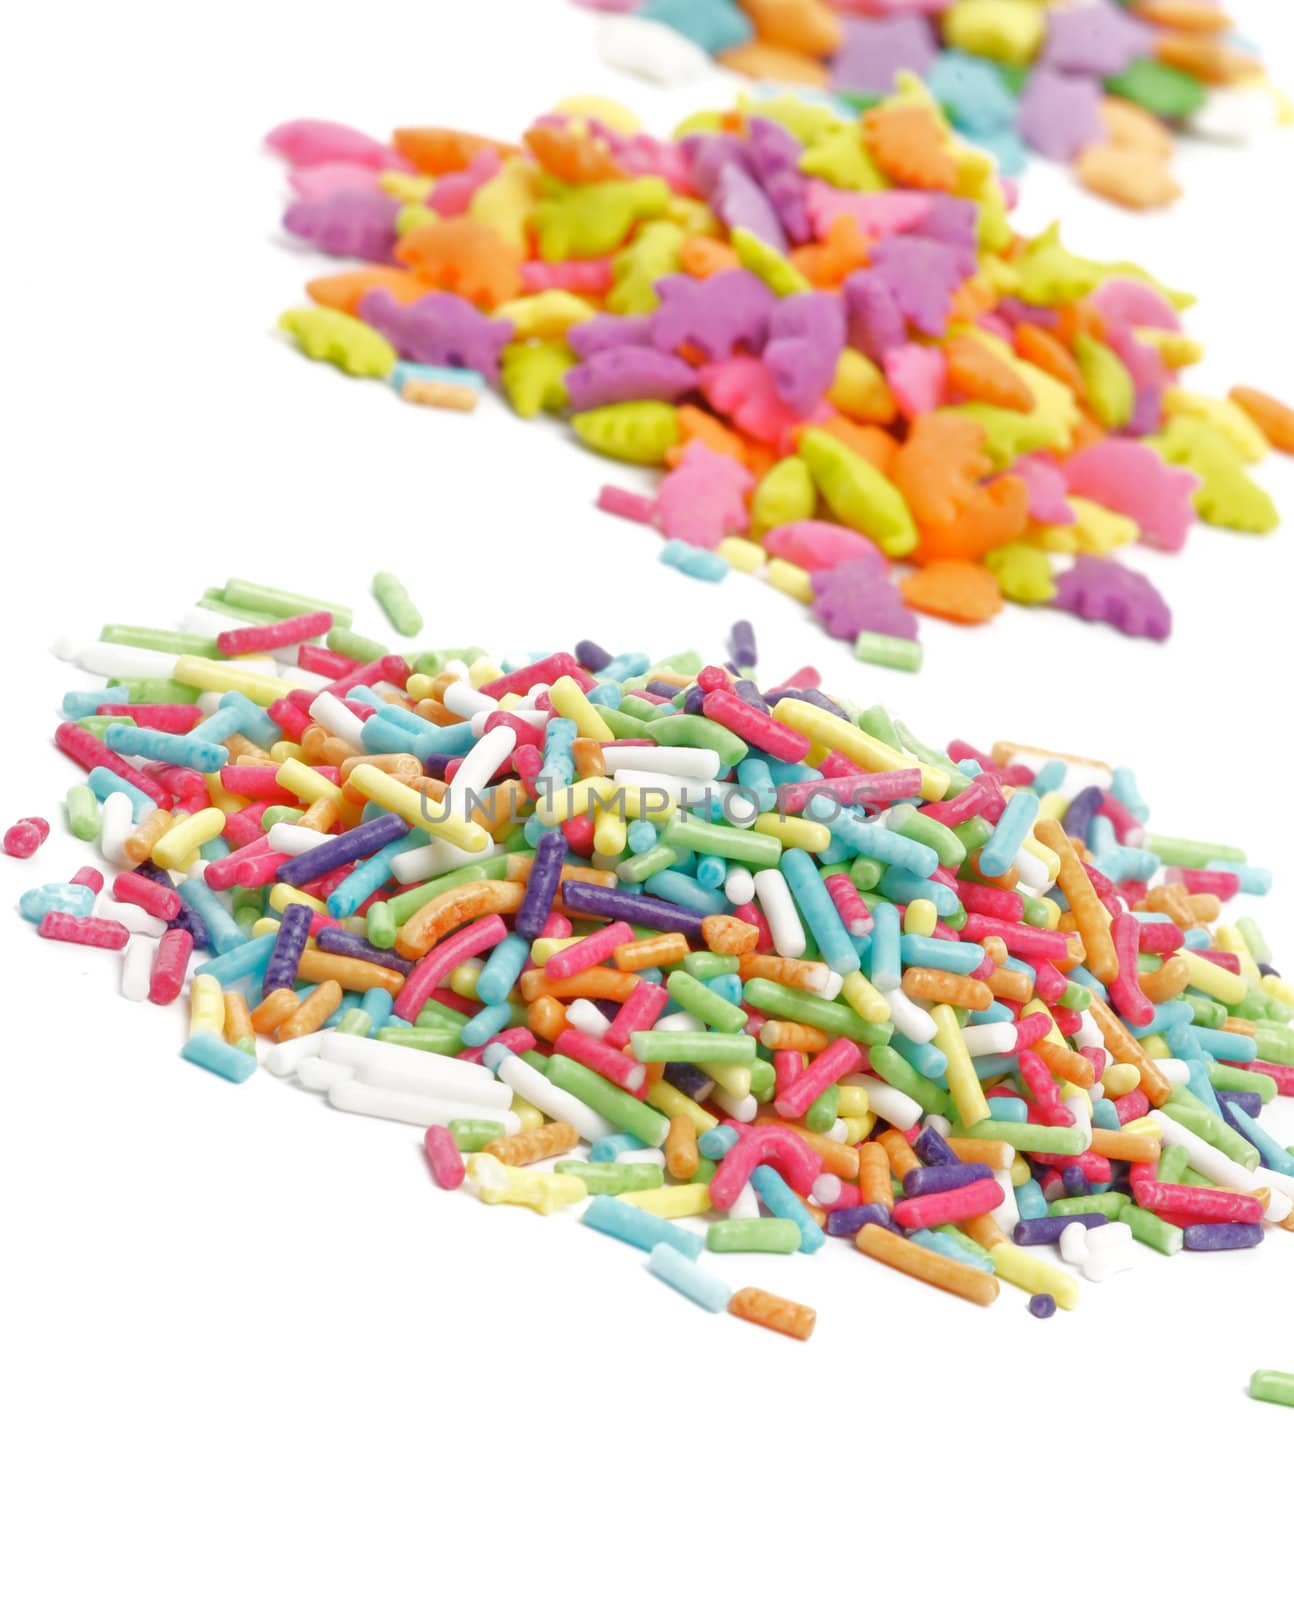 Multi Colored Sprinkles "Jimmies" by zhekos